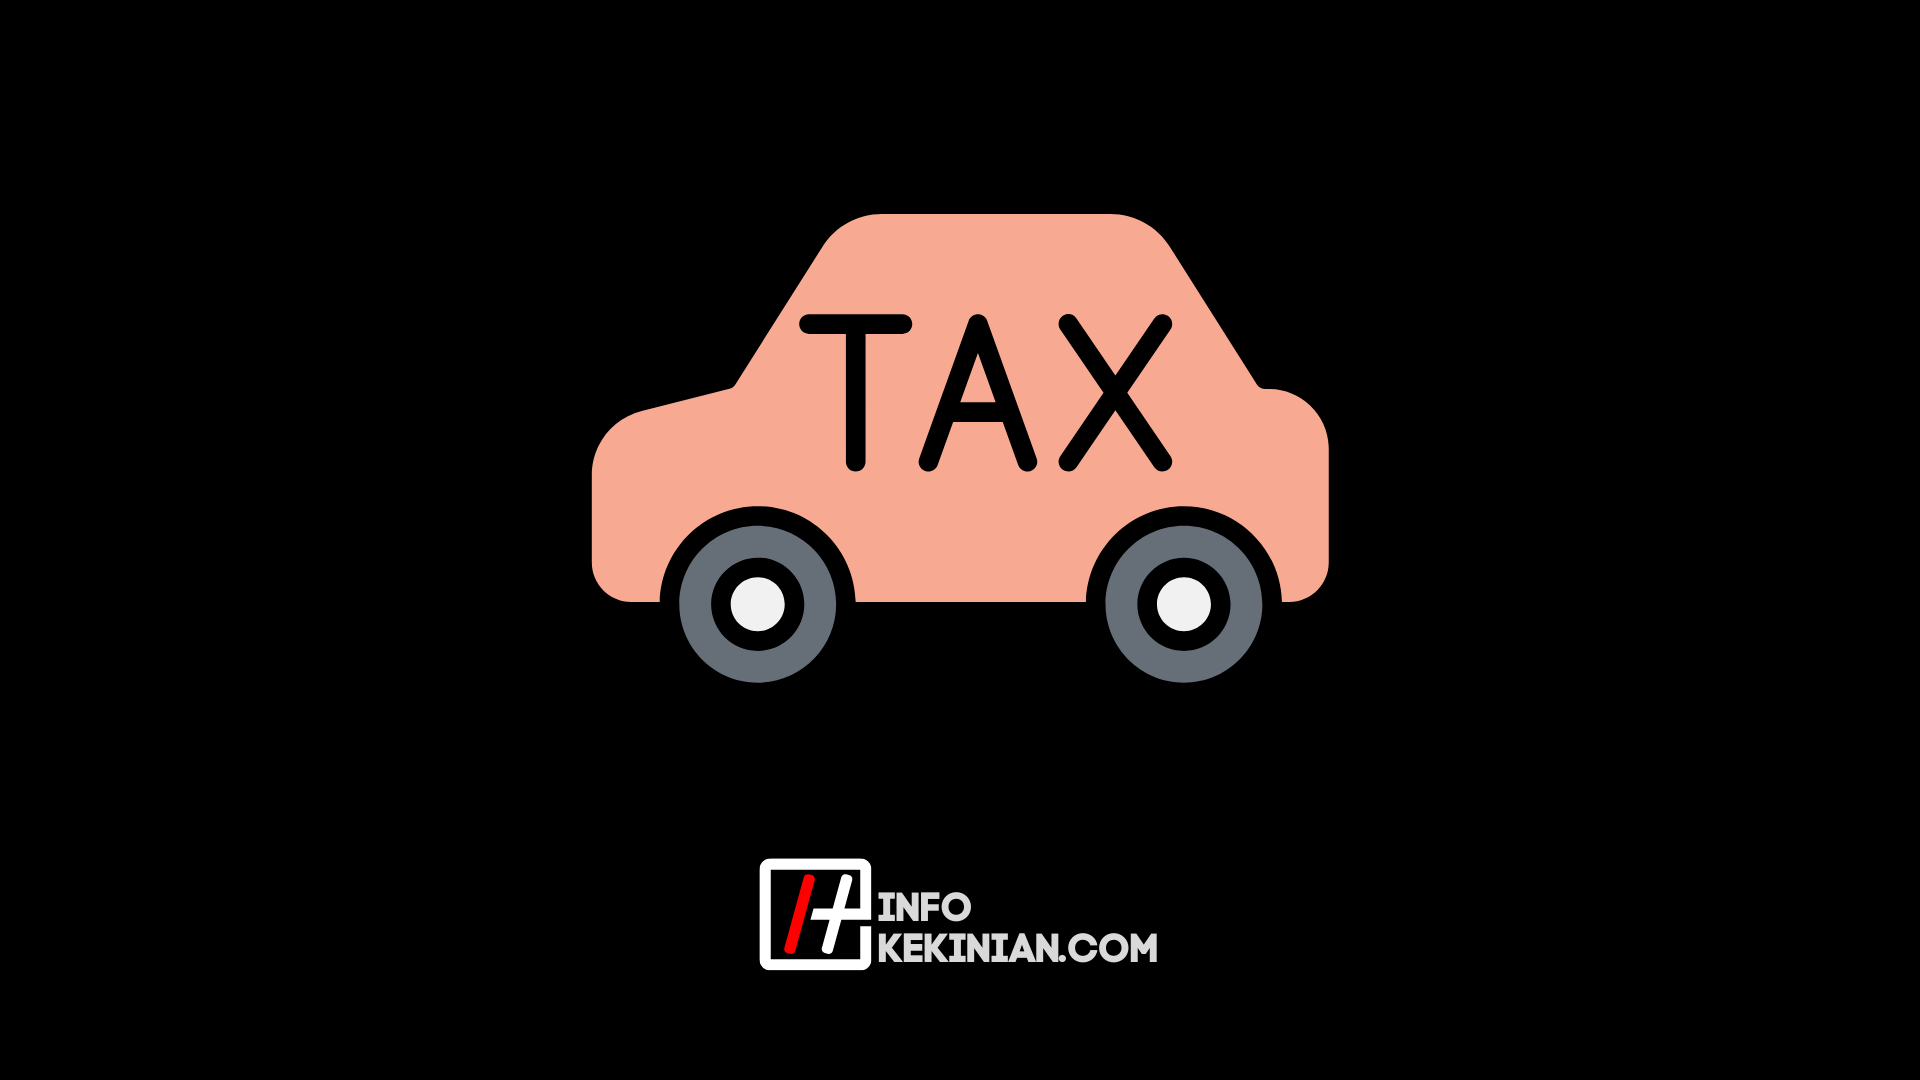 Vérification de la taxe sur les véhicules dans le sud de Sumatra